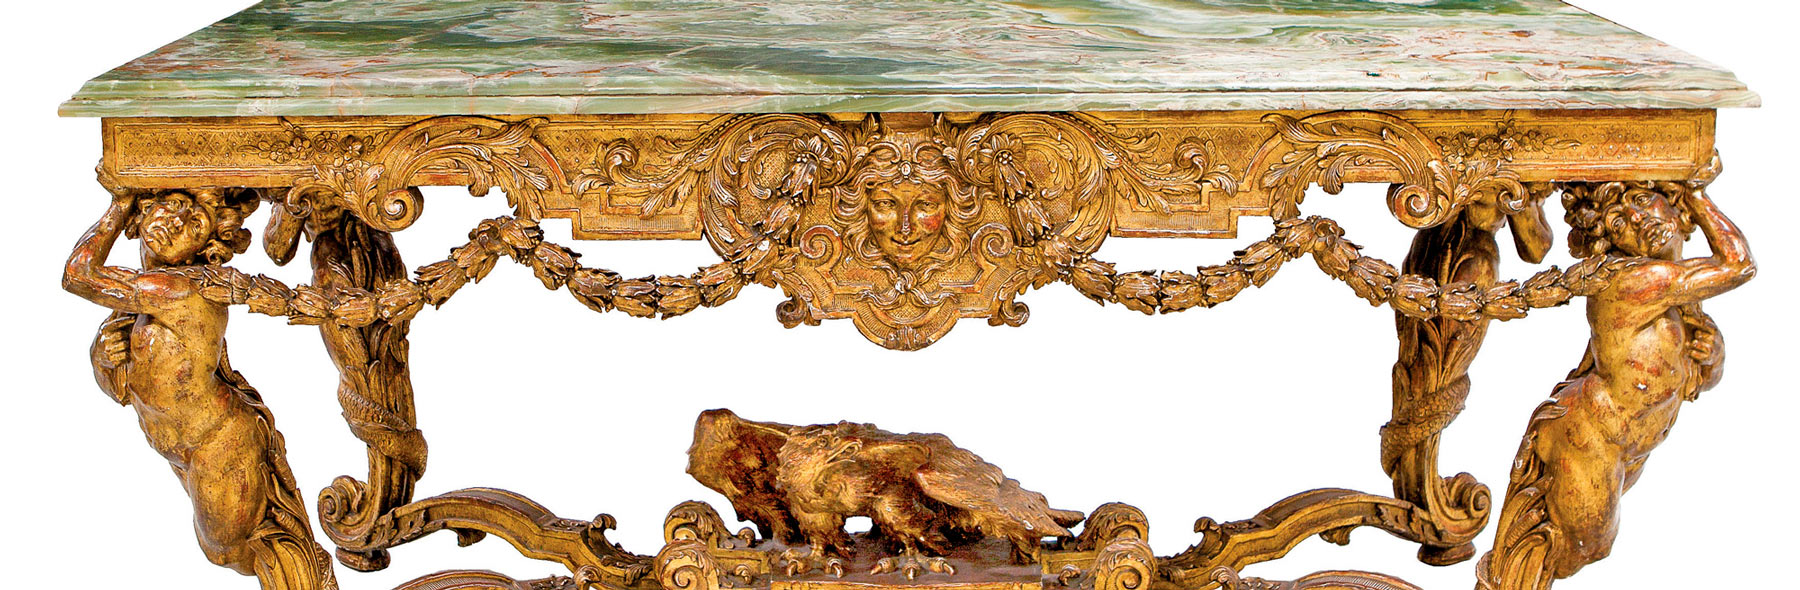 42.500 euros por una mesa de centro estilo Luis XIV en Abalarte